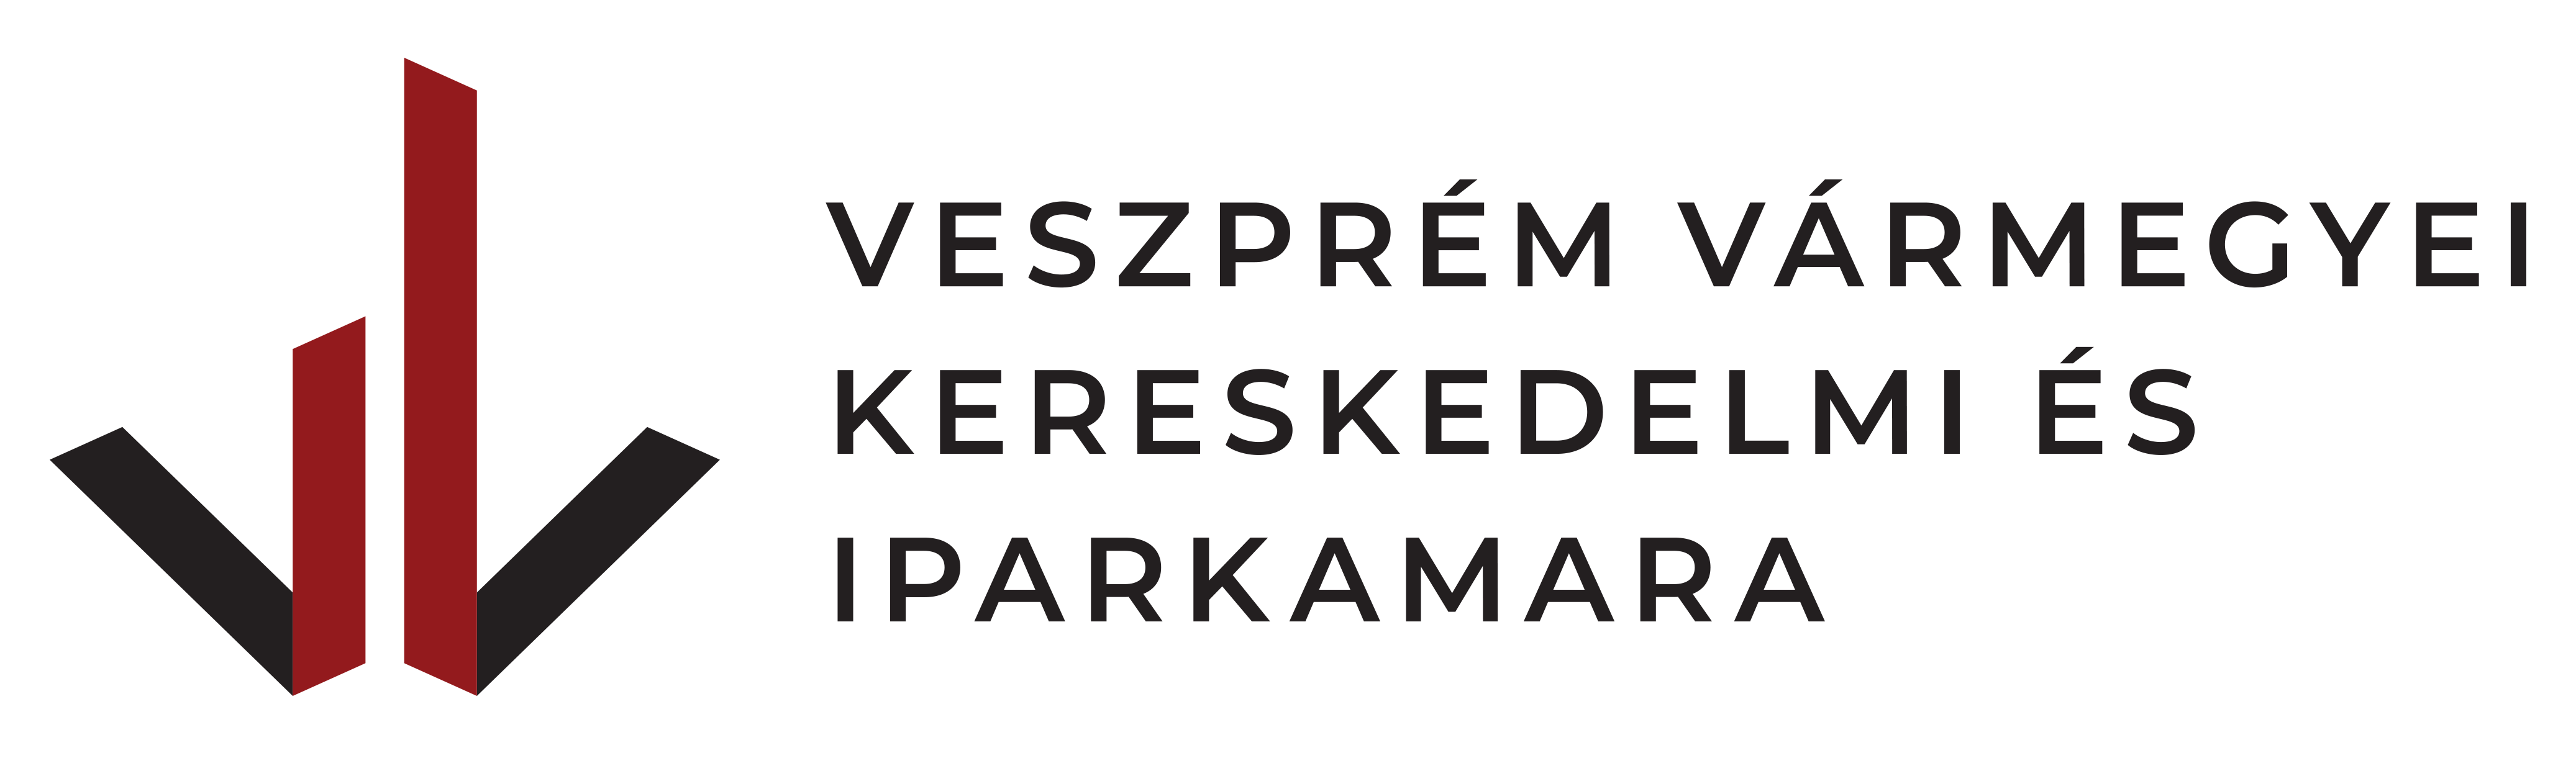 Veszprém Vármegyei Kereskedelmi és Iparkamara logó EmpowerHer Balaton